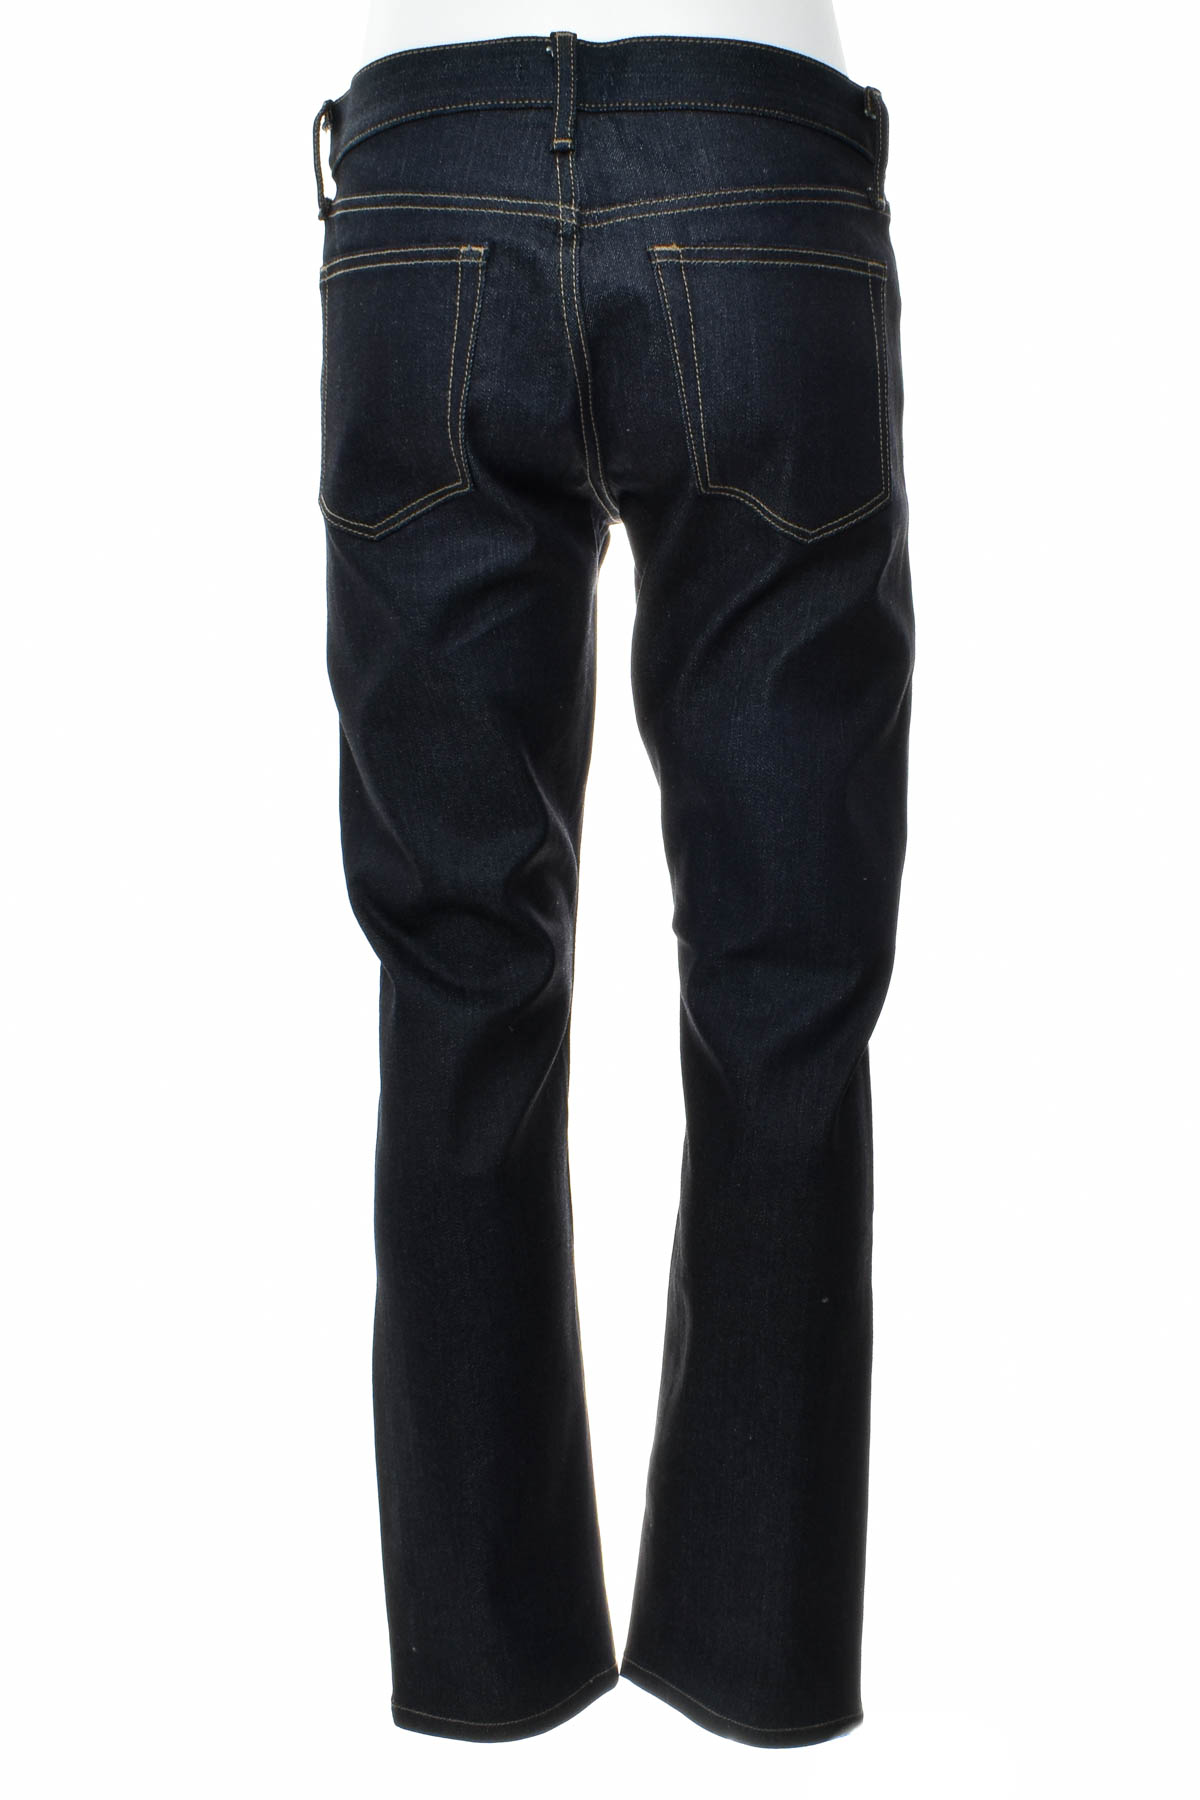 Men's jeans - UNIQLO JEANS - 1